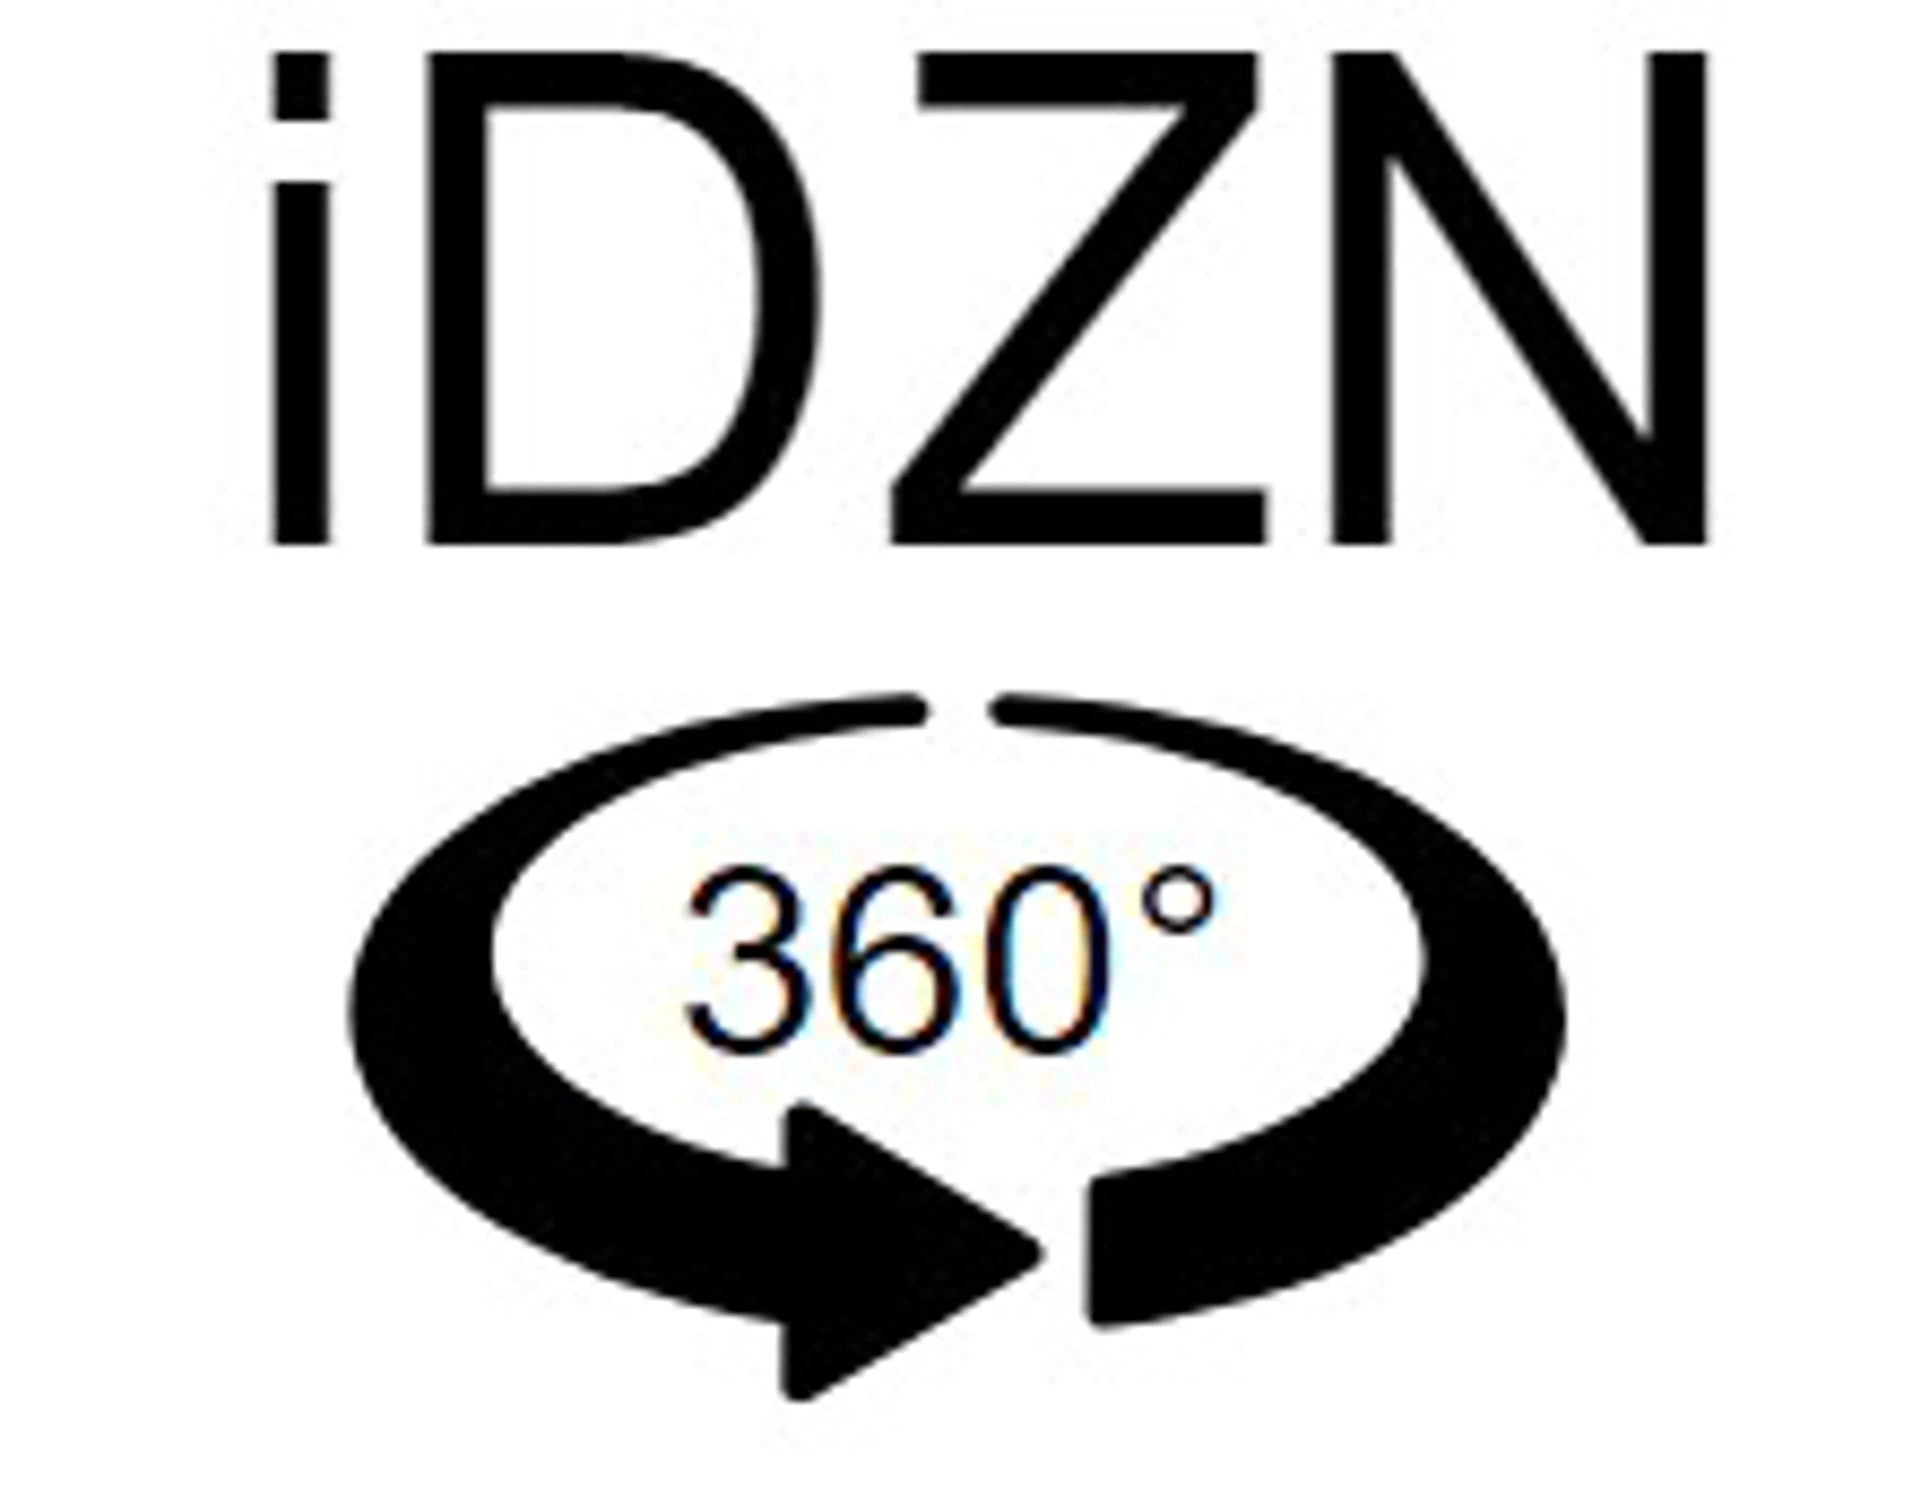 Idzn Logo 360 Lato (1)